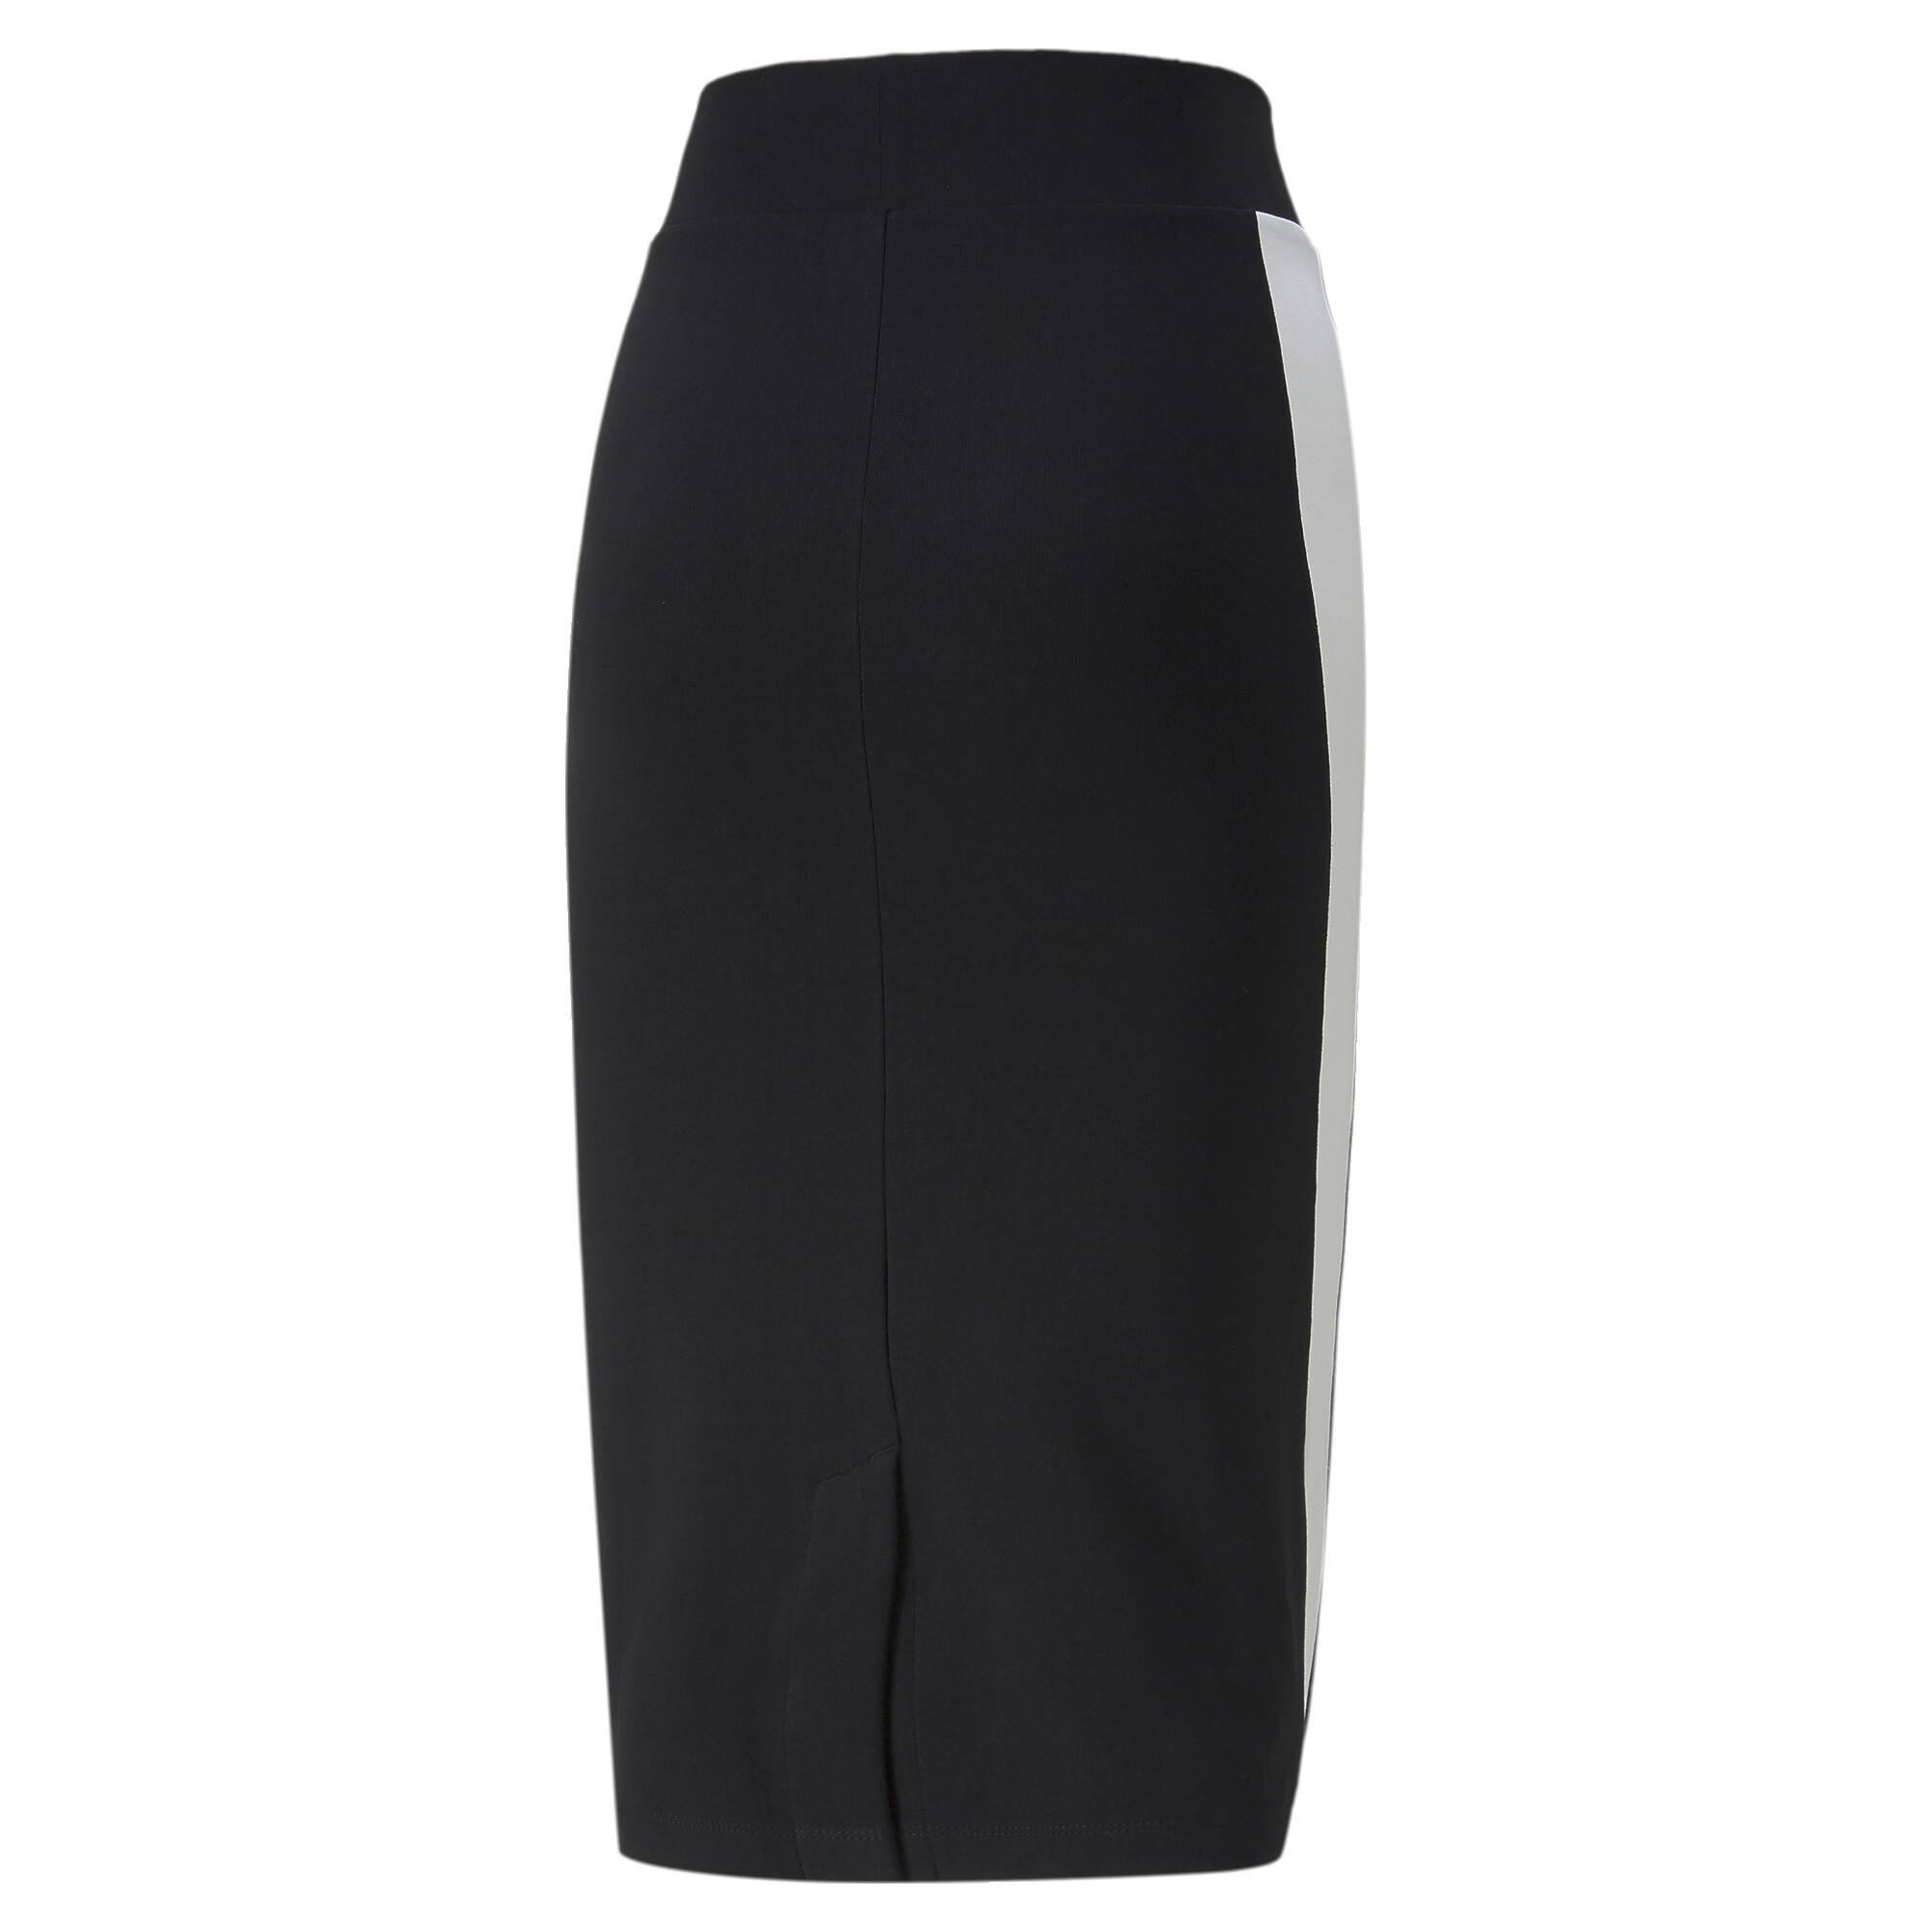 Women's PUMA T7 Skirt Women In Black, Size Large